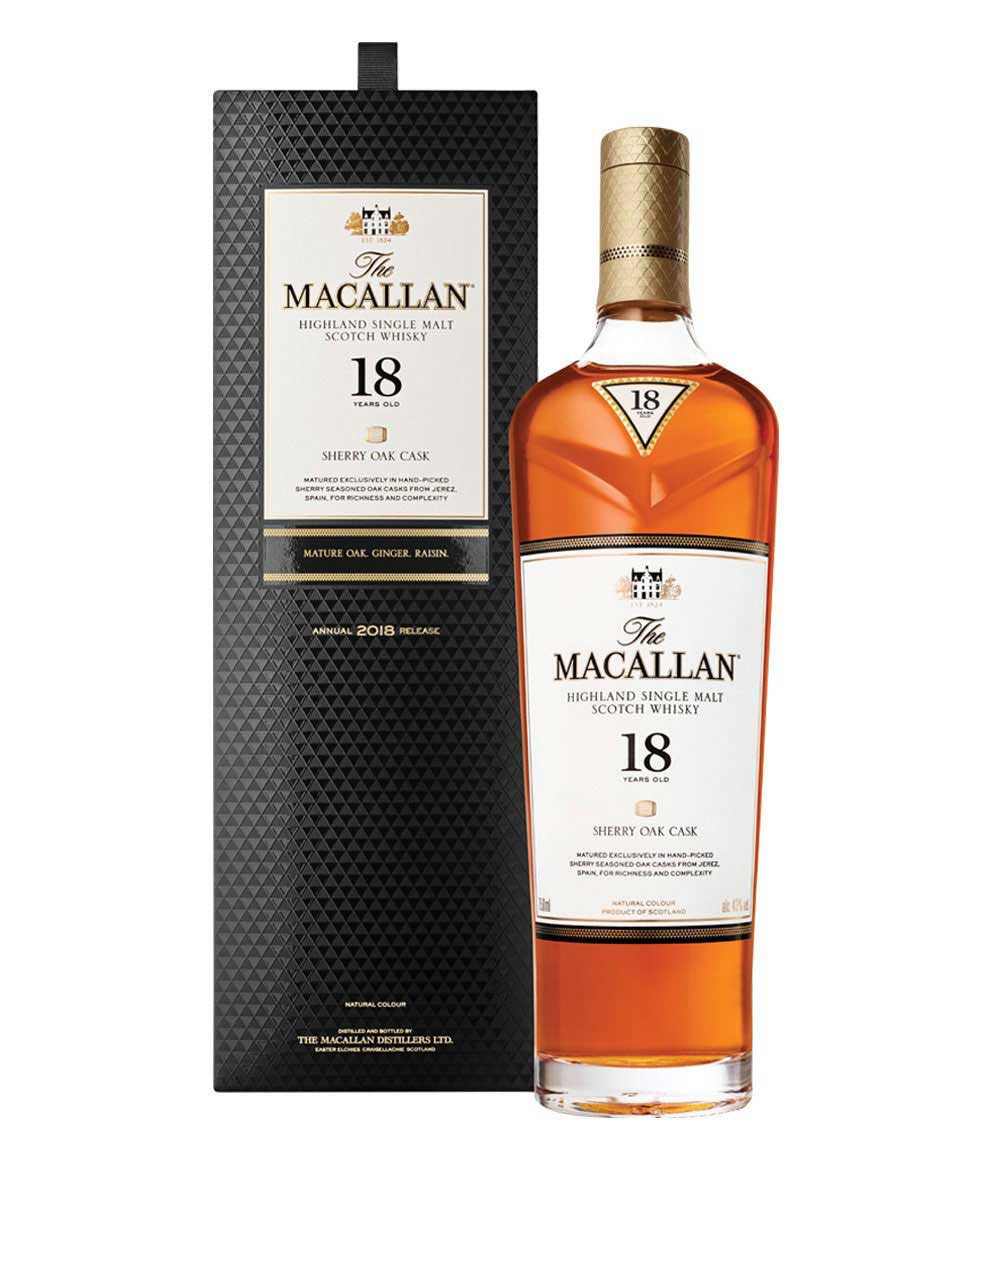 Kilchoman 100% Islay Single Malt Scotch Whisky